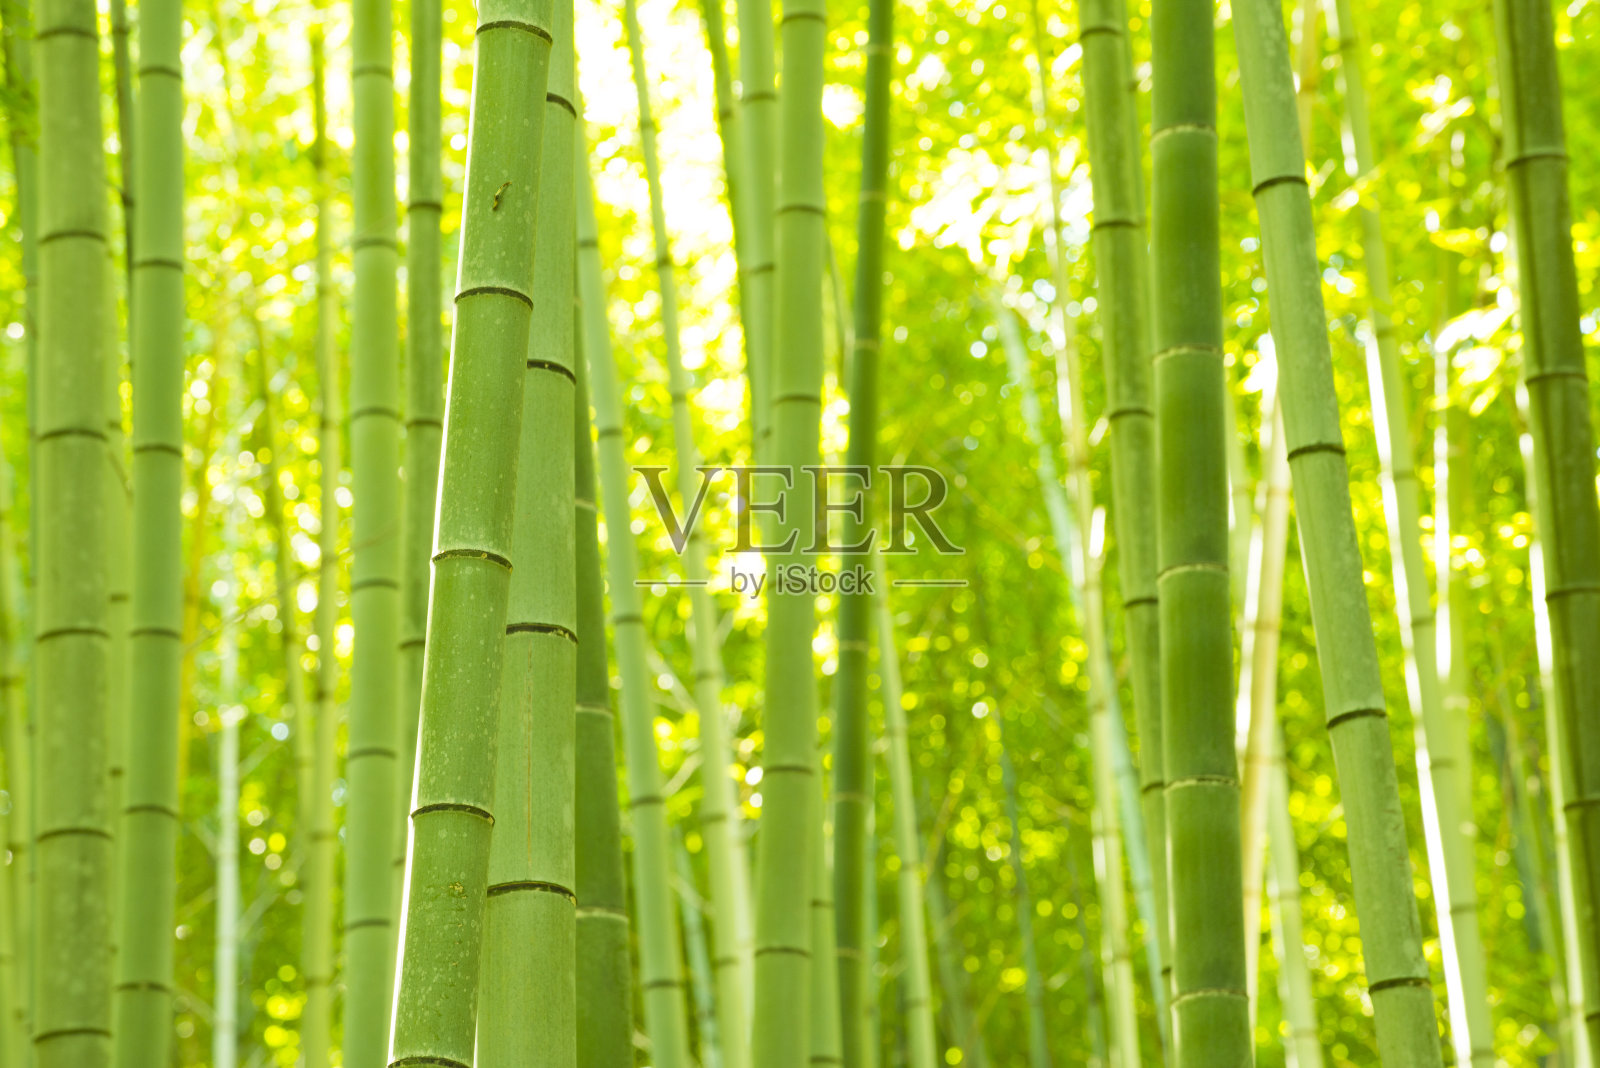 竹林，京都，日本照片摄影图片